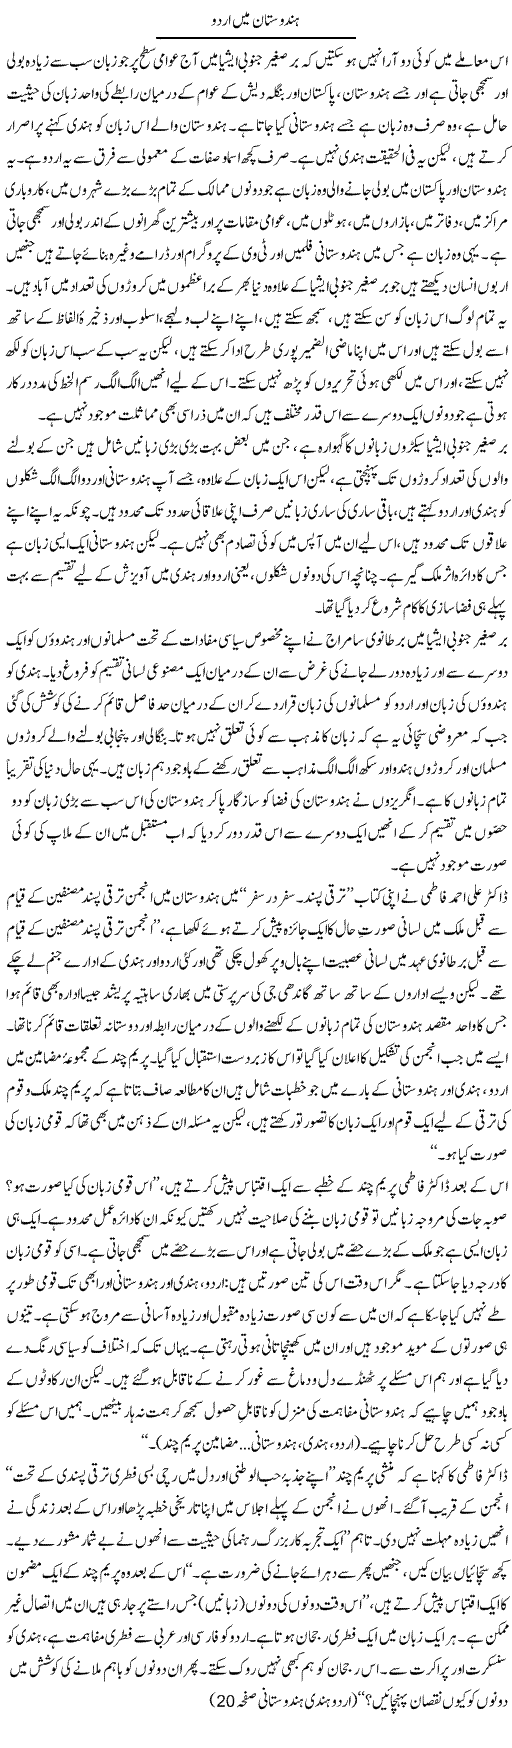 Urdu Language Express Column Anwar Ahsan 11 November 2011